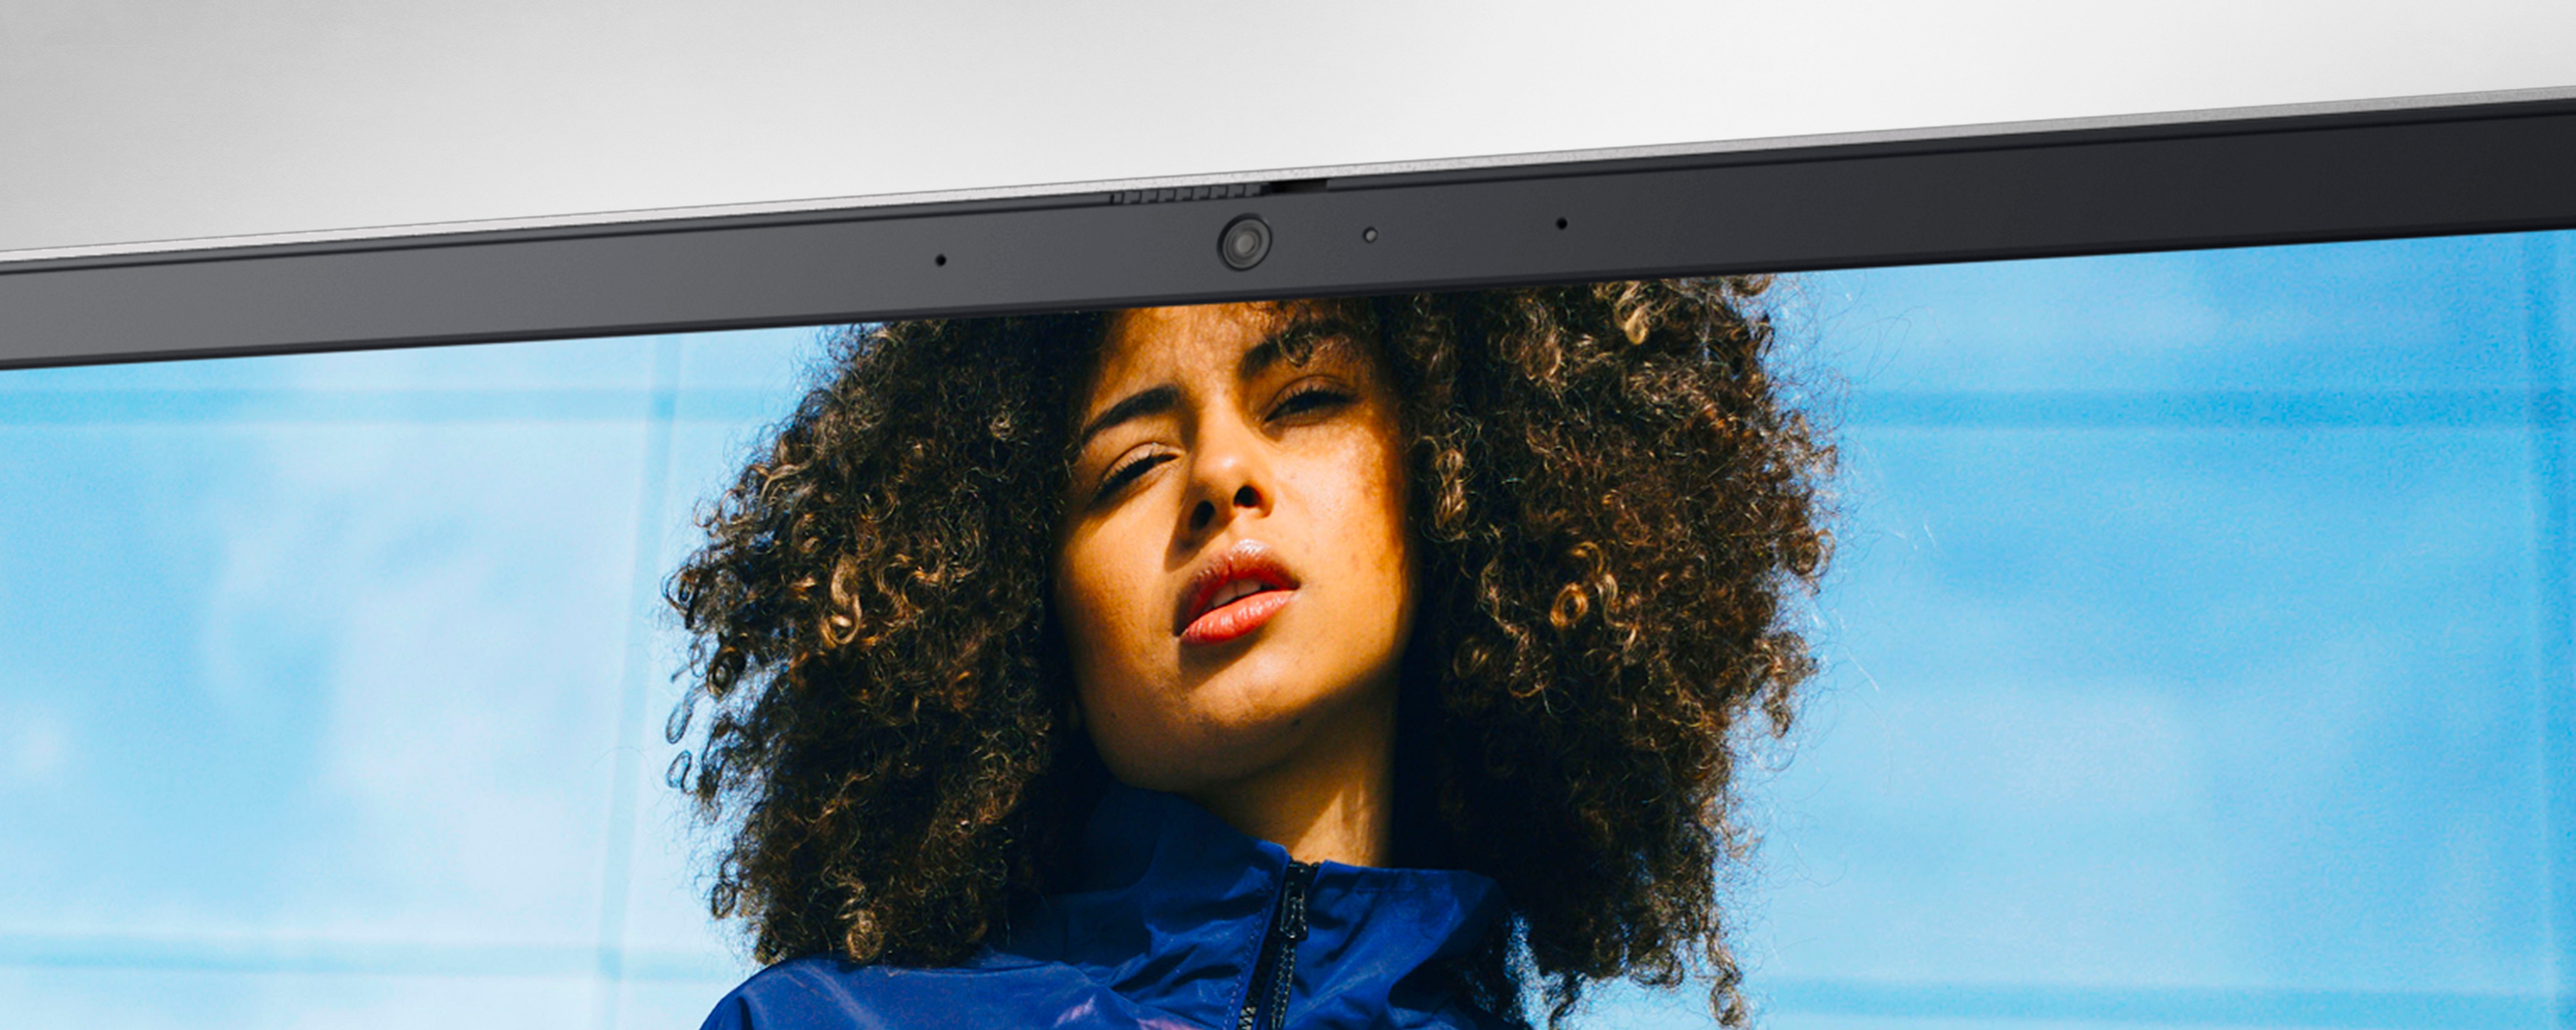 Bild eines Dell Inspiron-Laptopbildschirms von oben mit einer Frau, die eine dunkelblaue Jacke trägt und das Bild vor ihr anschaut.